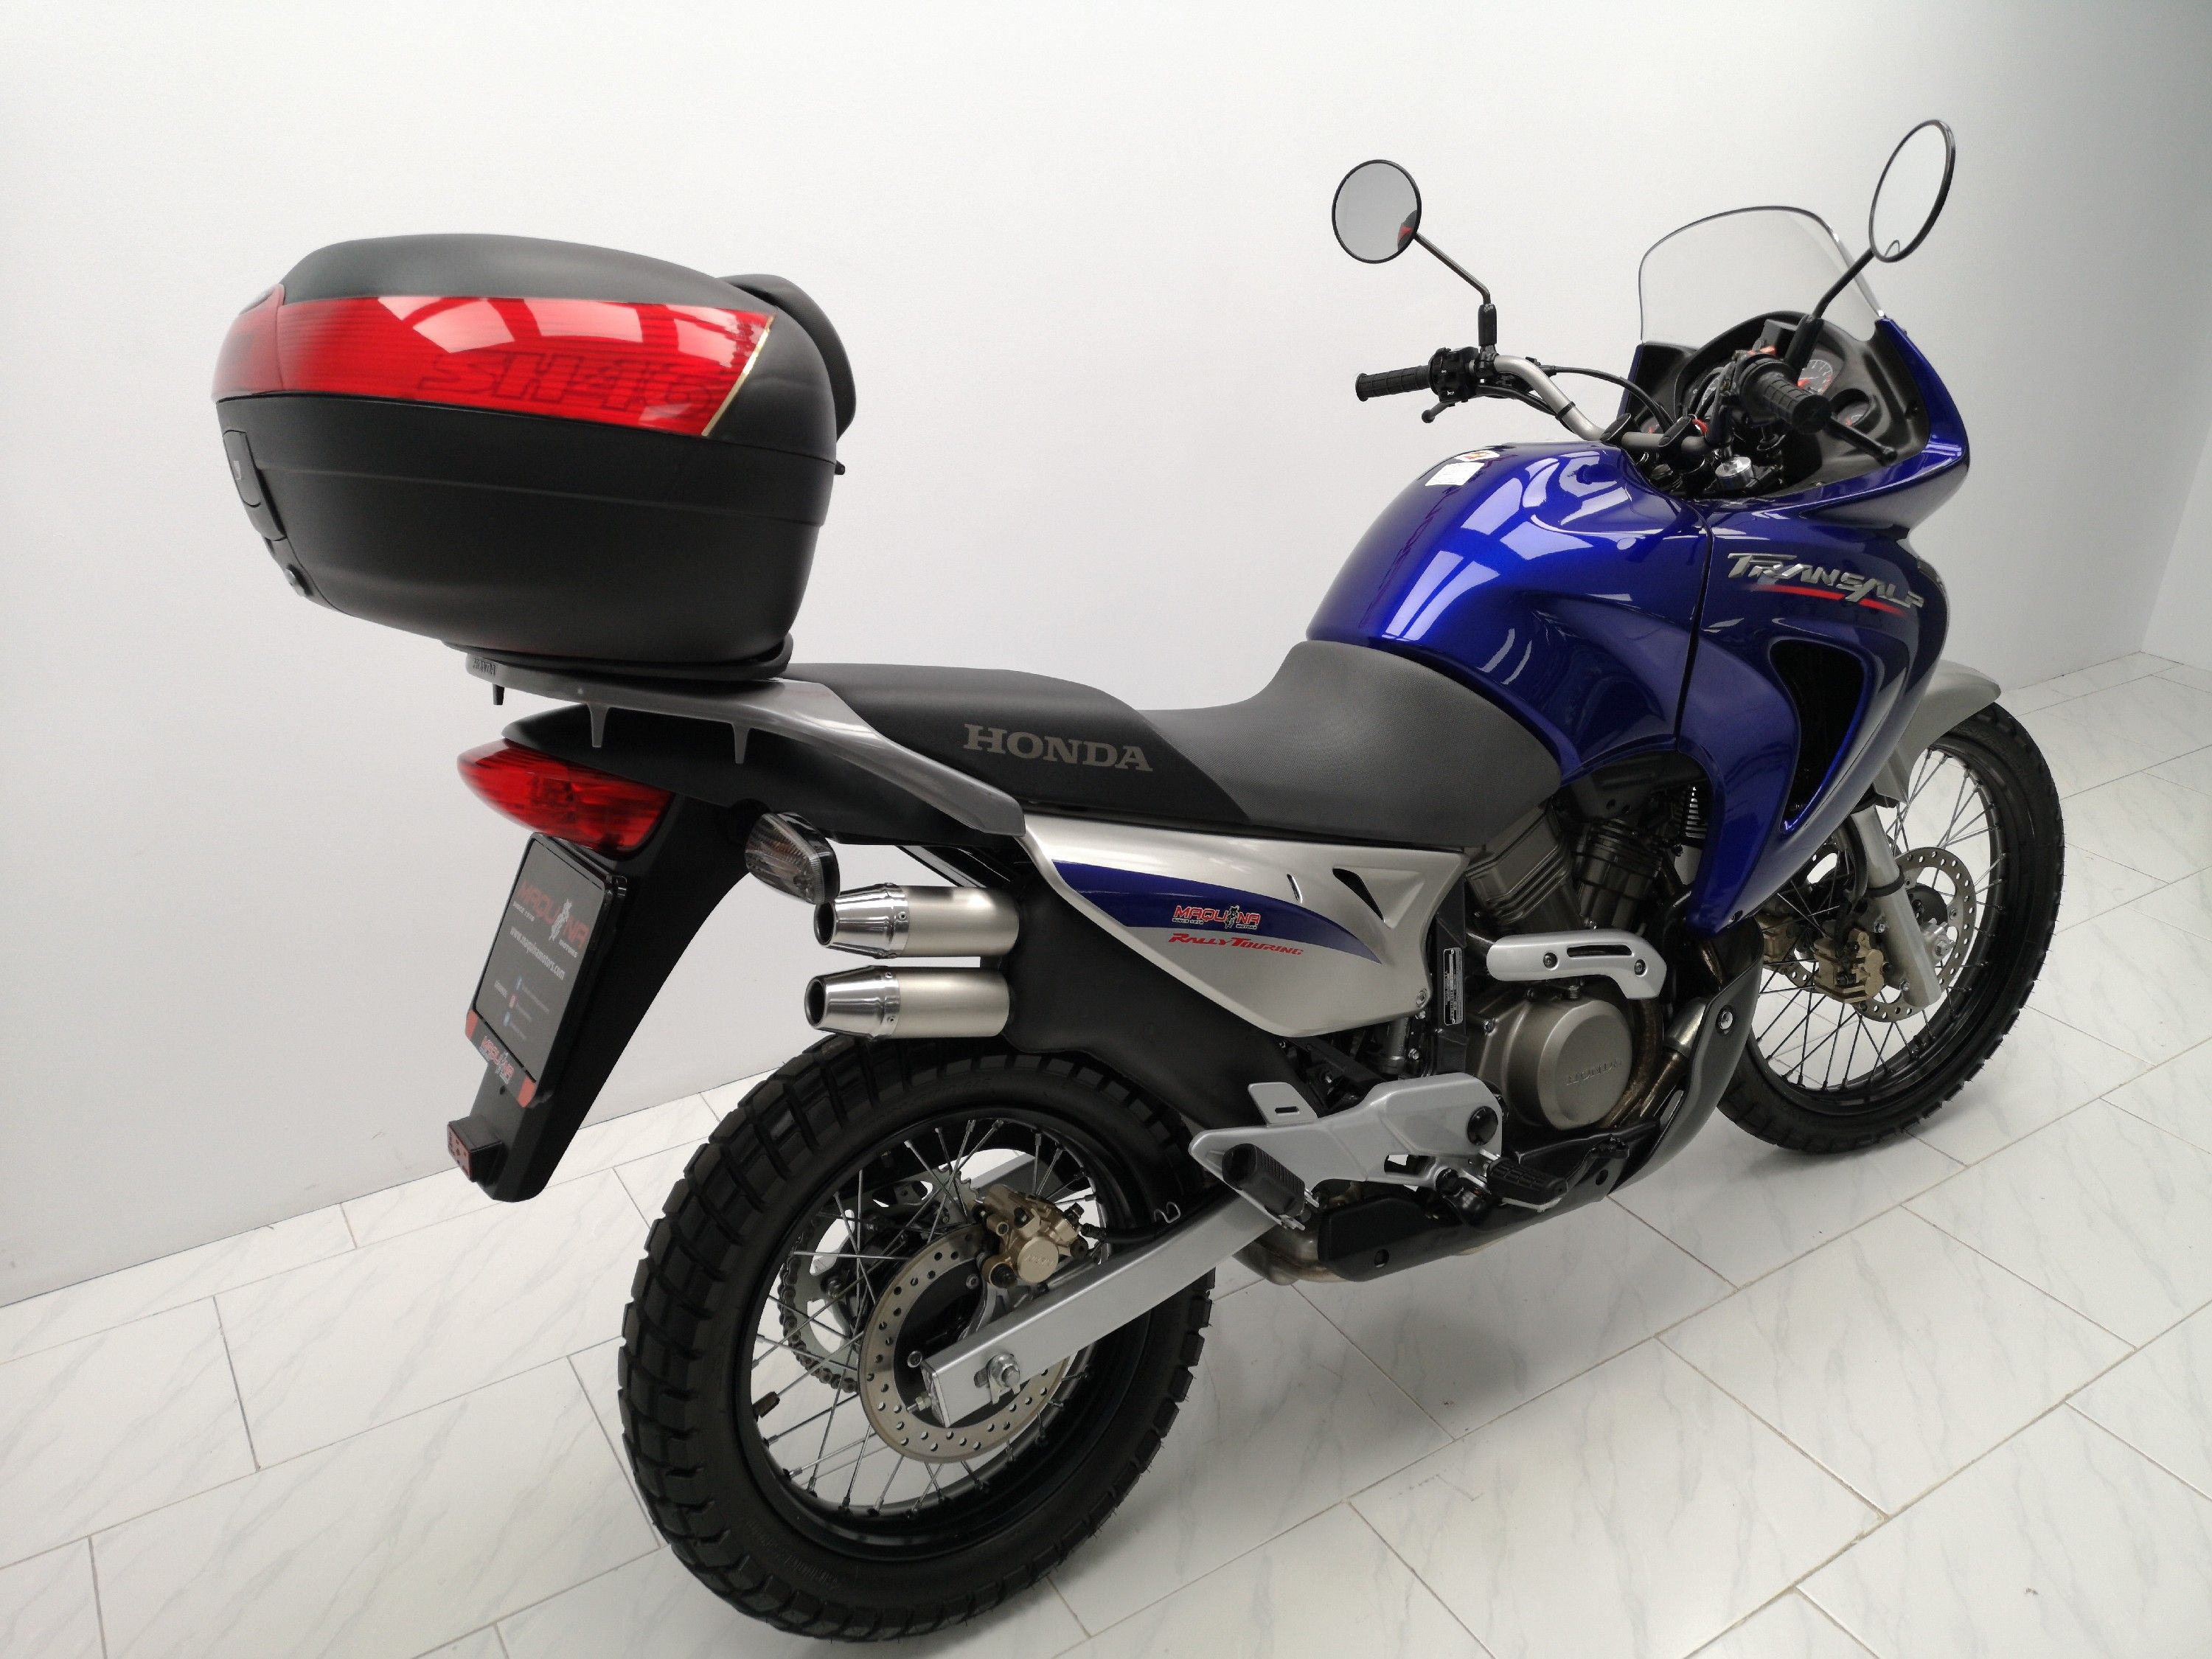 HONDA XL 650 V motos ocasión